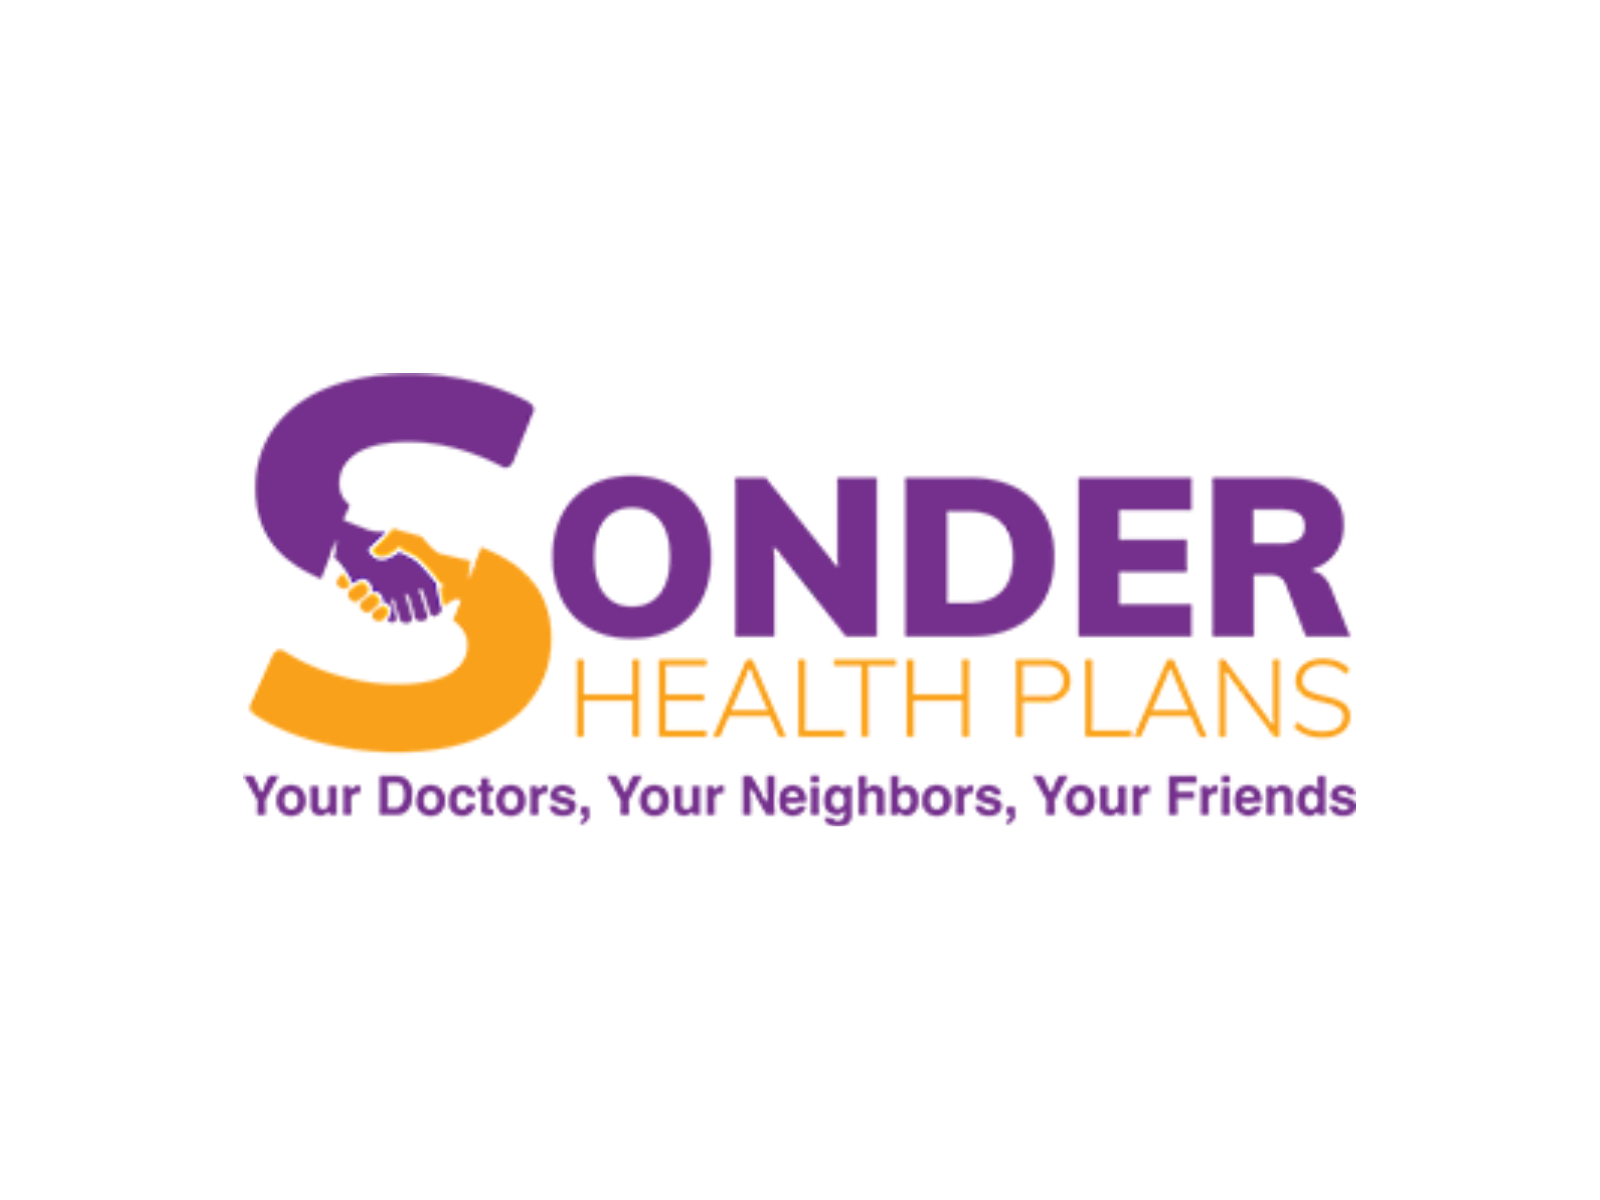 Sonder Health Plans